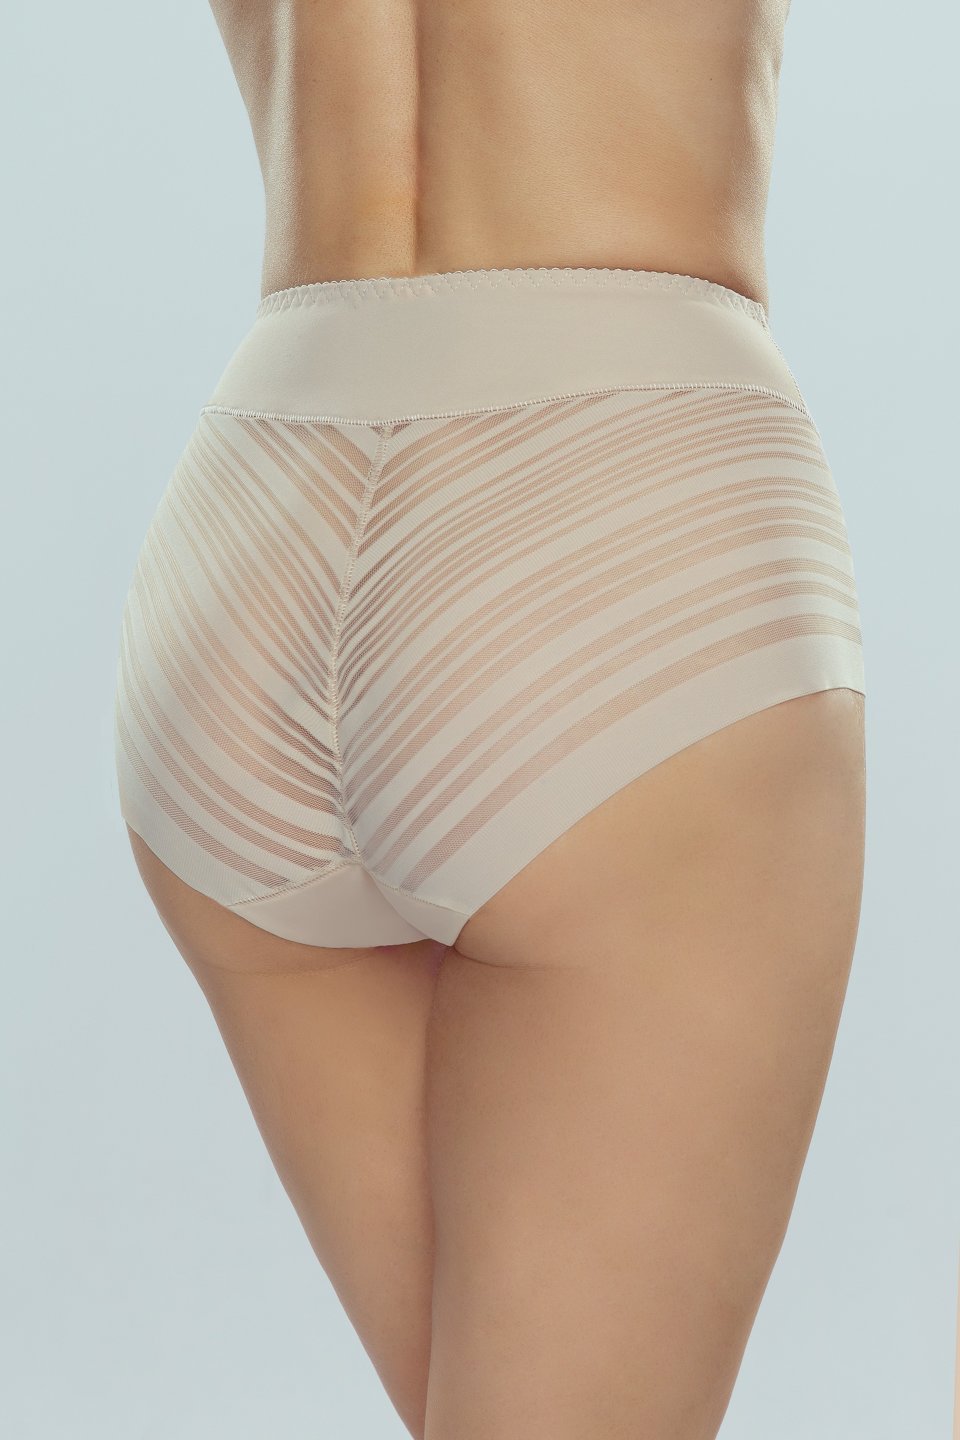 Eldar Woman's Slimming Panties Velma